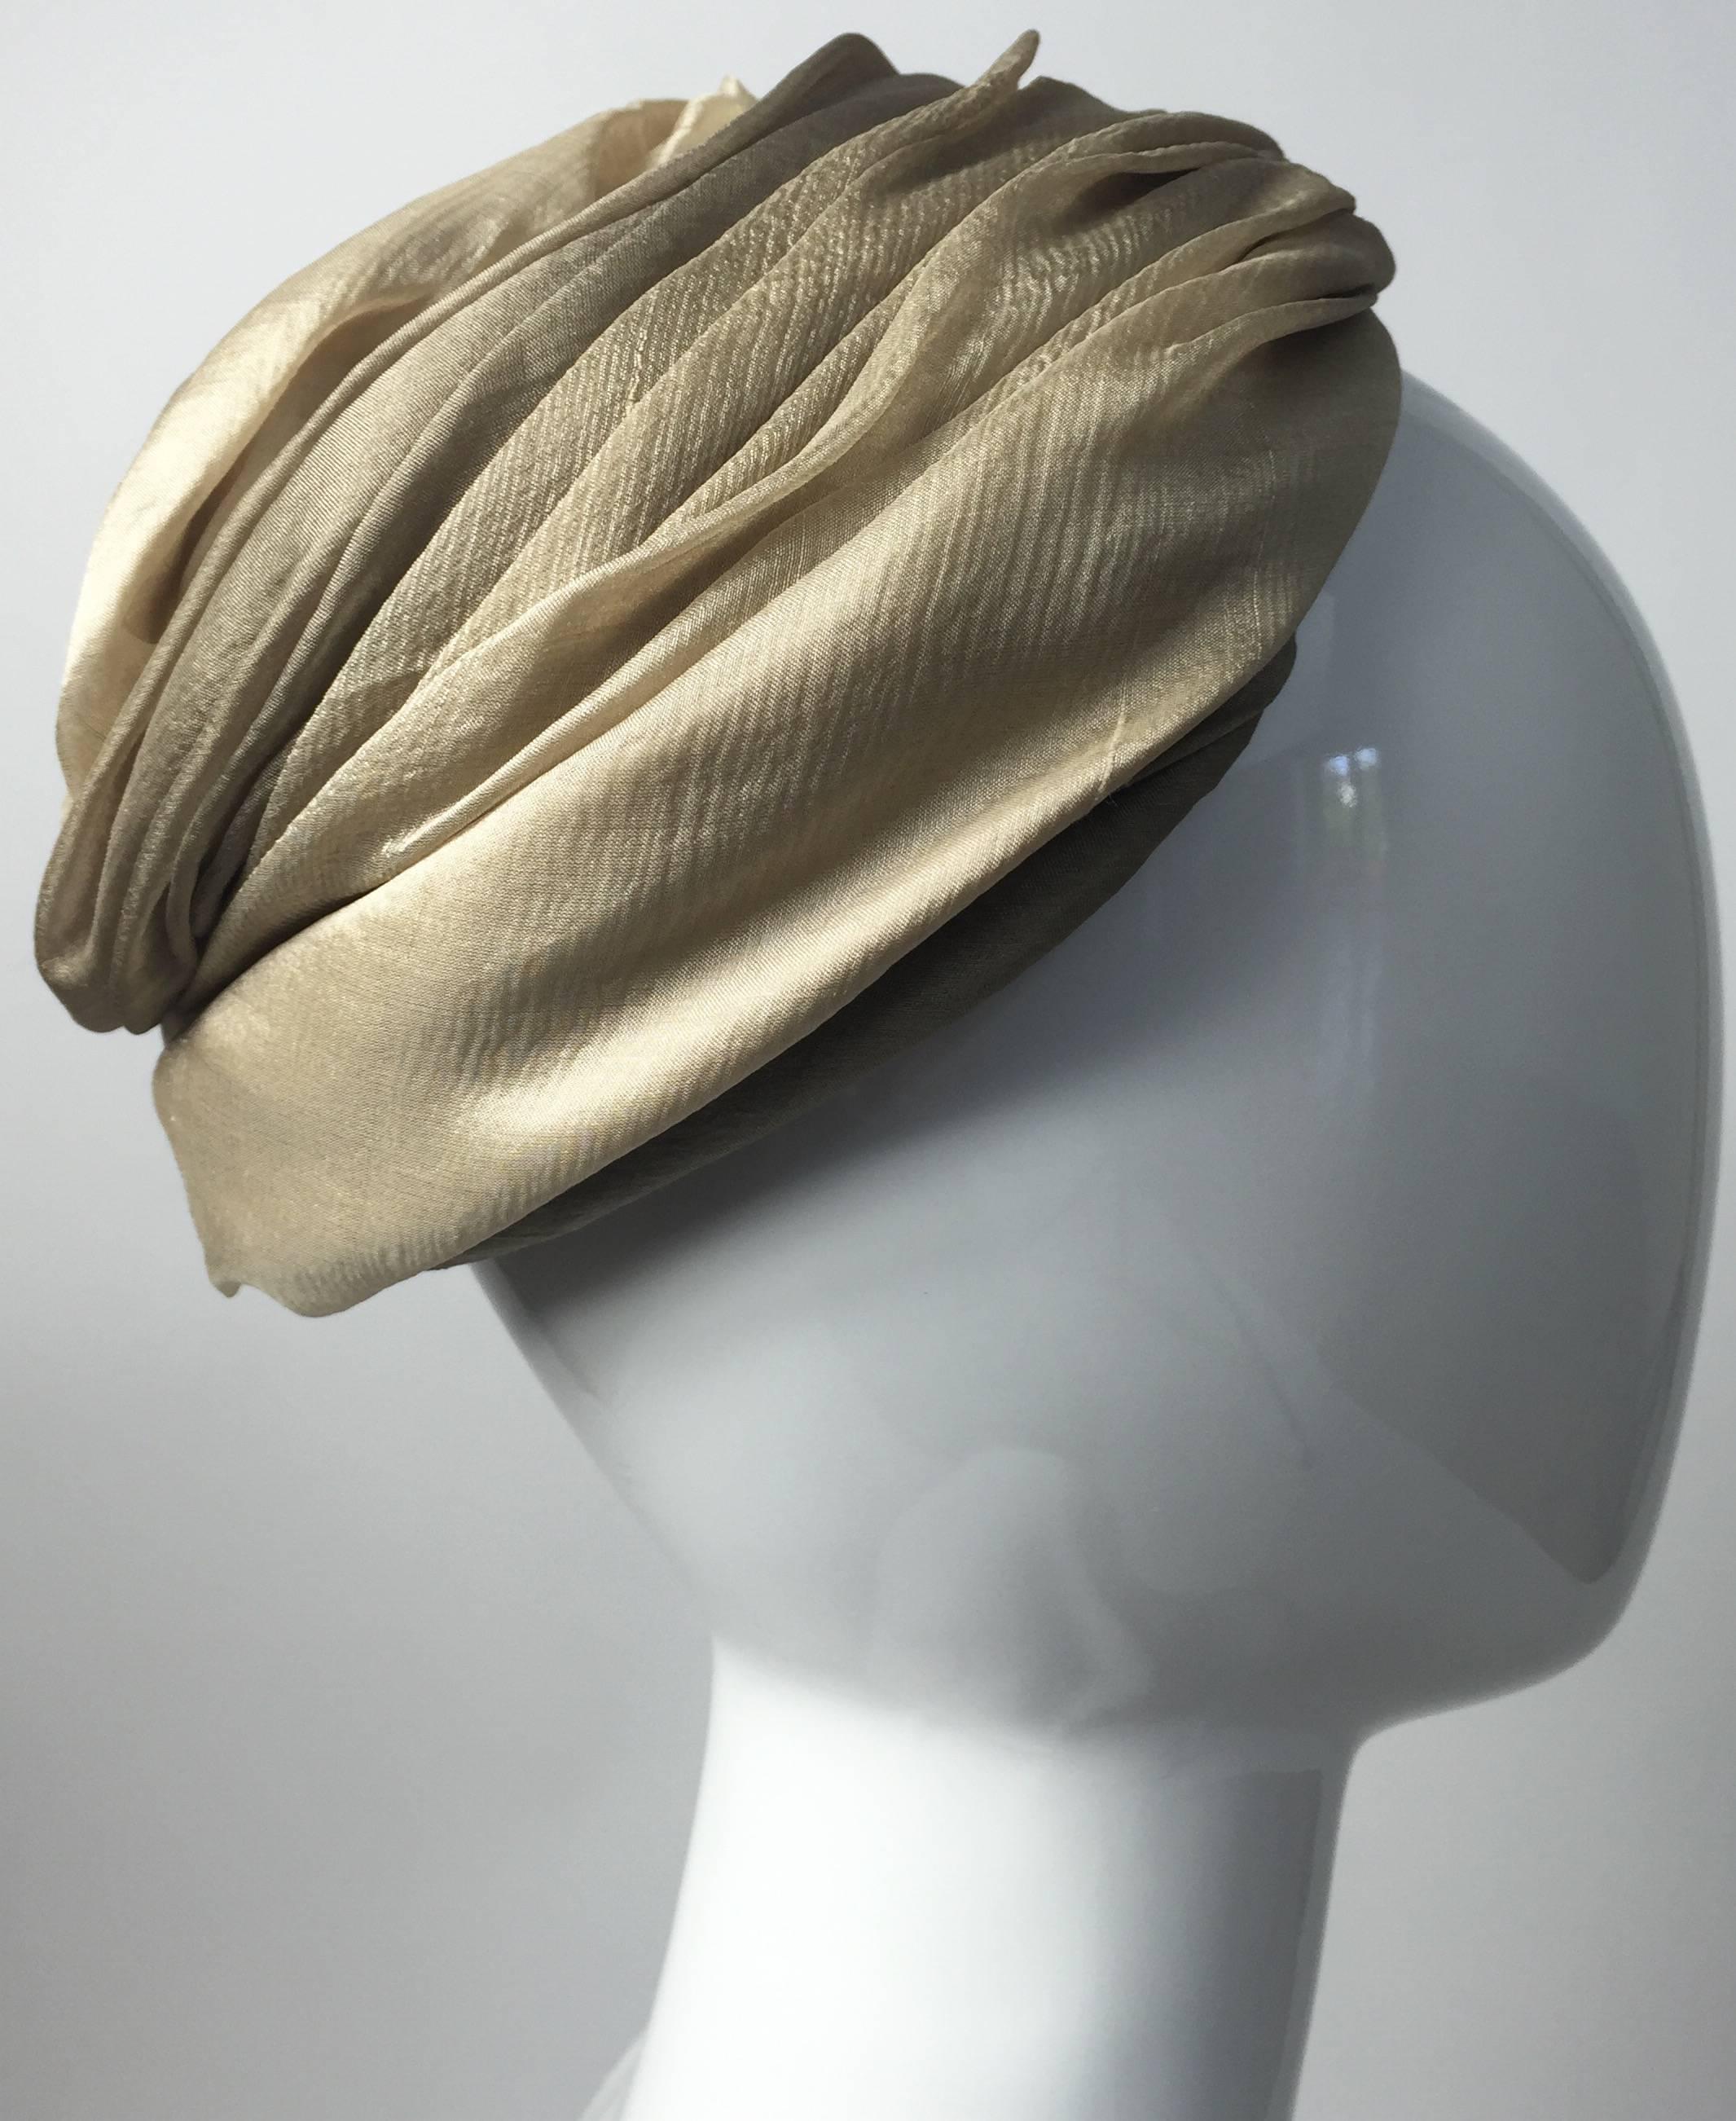 Un exquis chapeau turban Christian Dior du début des années 1950. Réalisé en mousseline de soie douce dans des tons taupe, beige et ivoire clair et doré. Le tissu est légèrement drapé et plissé. Finition à la main. Doublé d'un filet
En excellent